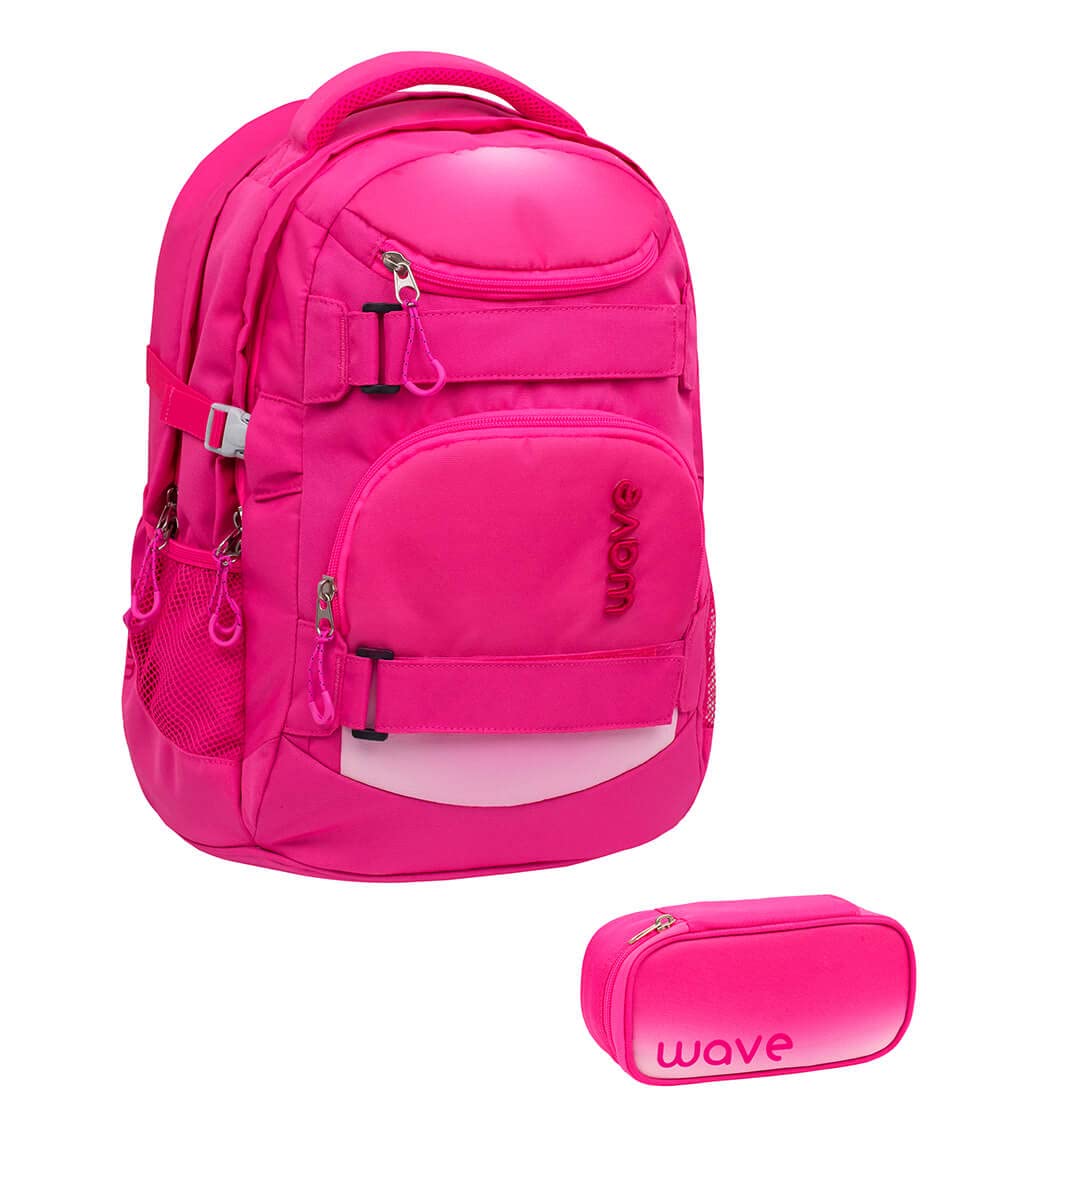 Wave Infinity Schulrucksack Set 2 - teilig mit Laptopfach Tabletfach / 43 x 31 x 22 cm / 30 Liter/Unisex Jungen Mädchen/Rucksack Daypack (338-72/A Set1 Ombre Light Pink)